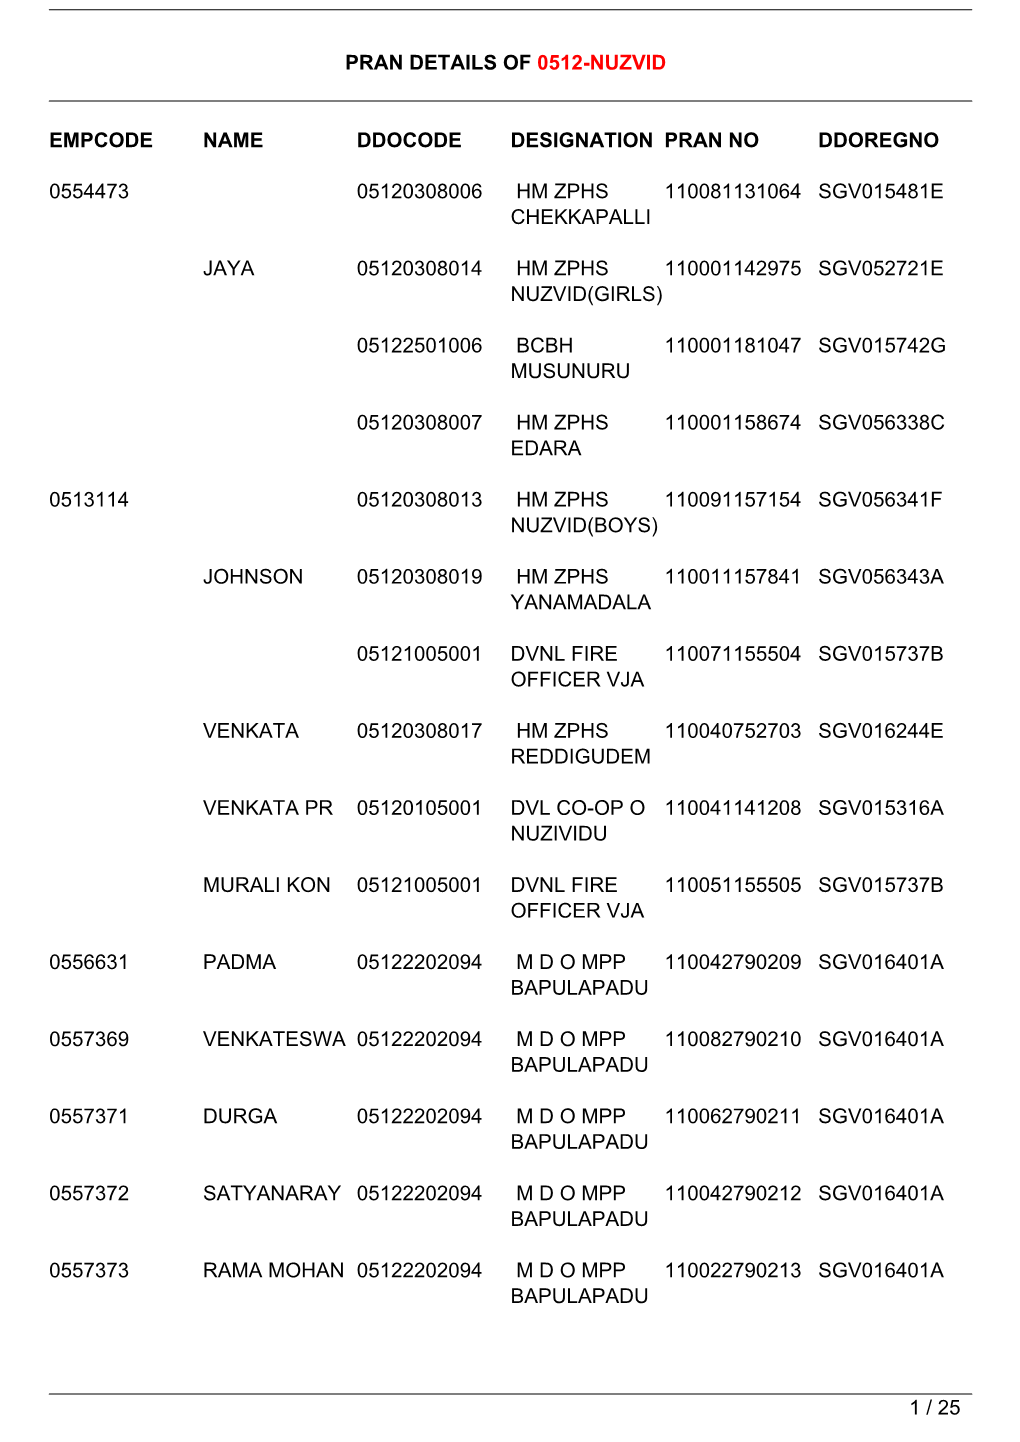 Pran Details of 0512-Nuzvid Empcode Name Ddocode